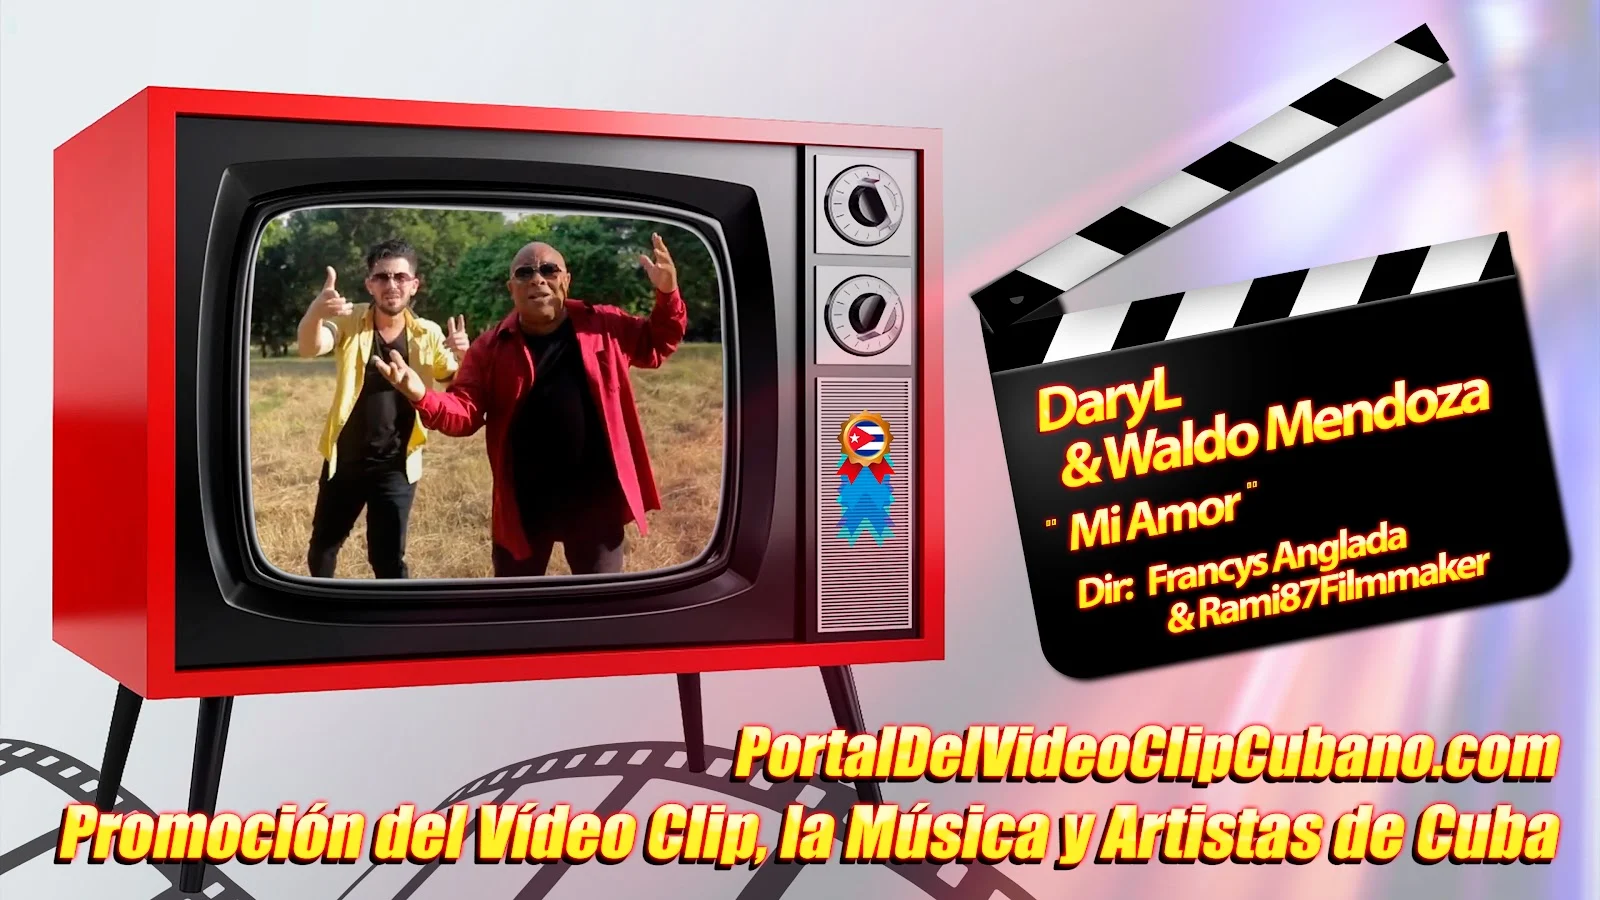 DaryL y Waldo Mendoza - ¨Mi Amor¨ - Dirección: Francys Anglada &amp; Rami87Filmmaker. Portal Del Vídeo Clip Cubano. Música cubana. Canción. CUBA